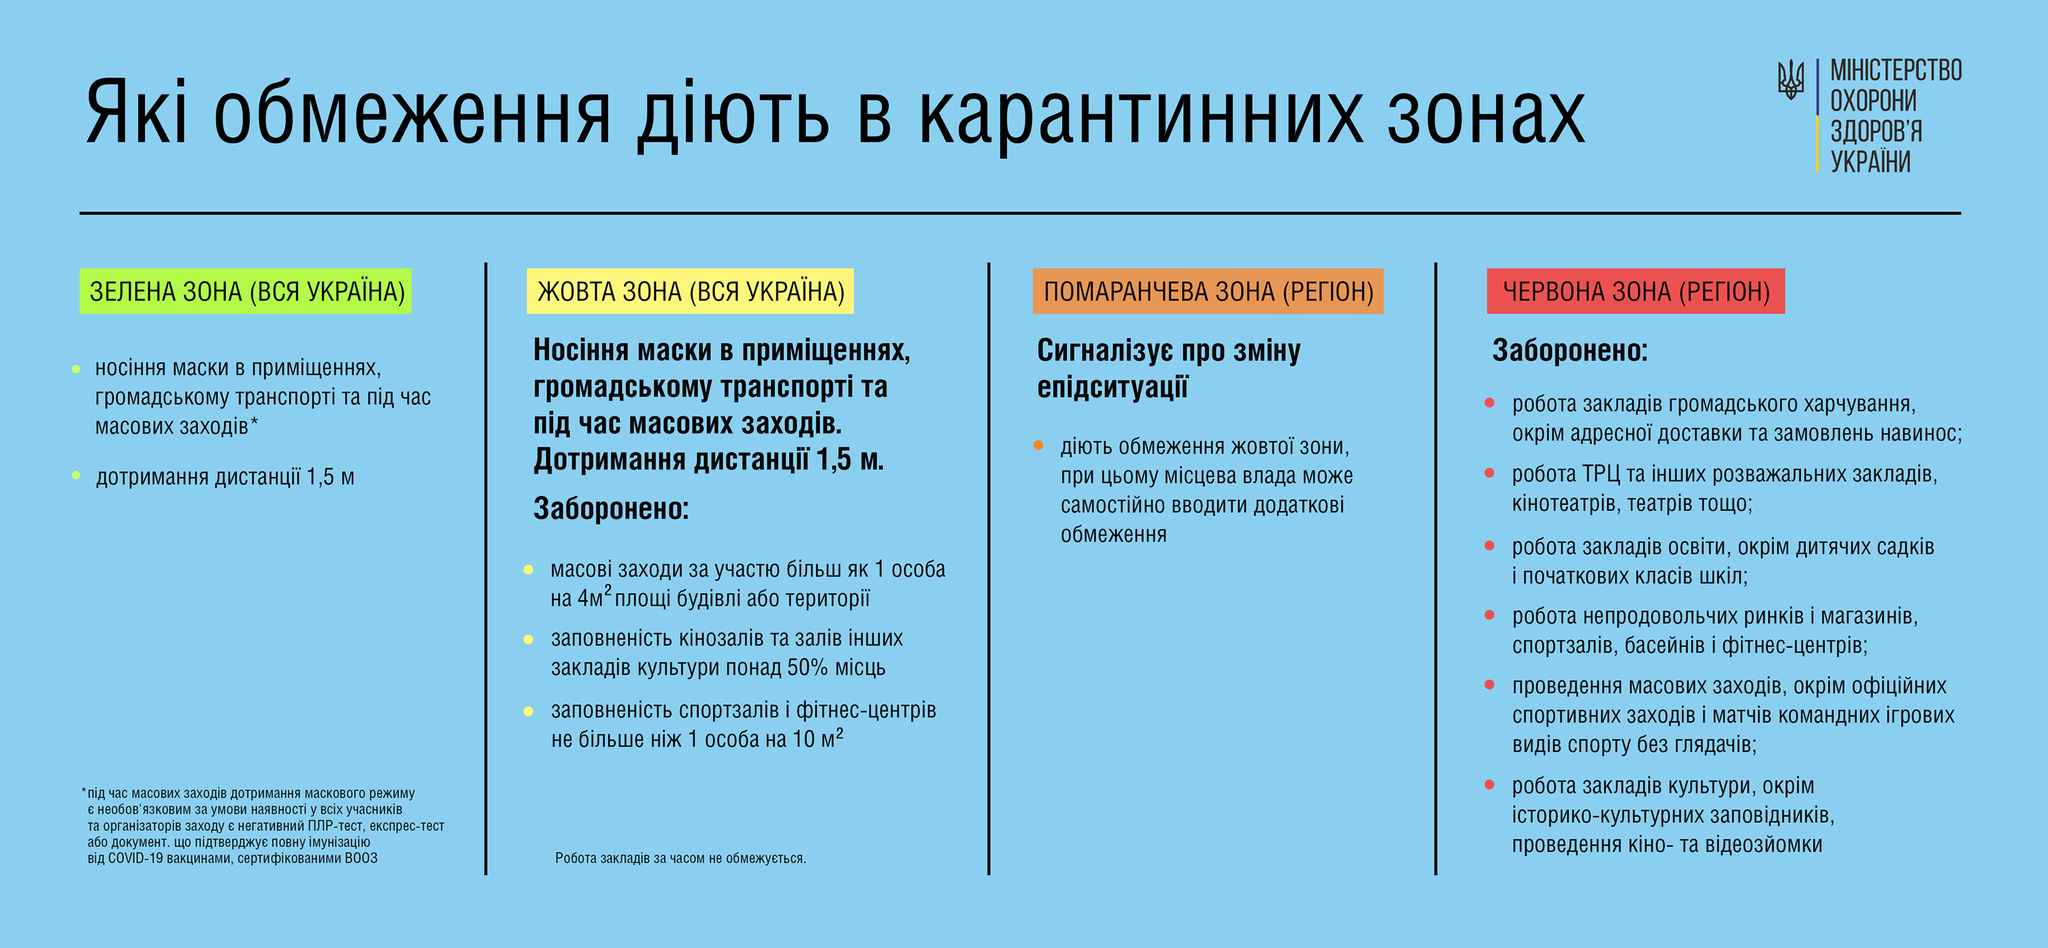 Карантин в Україні можуть посилити: у МОЗ пояснили, за яких умов